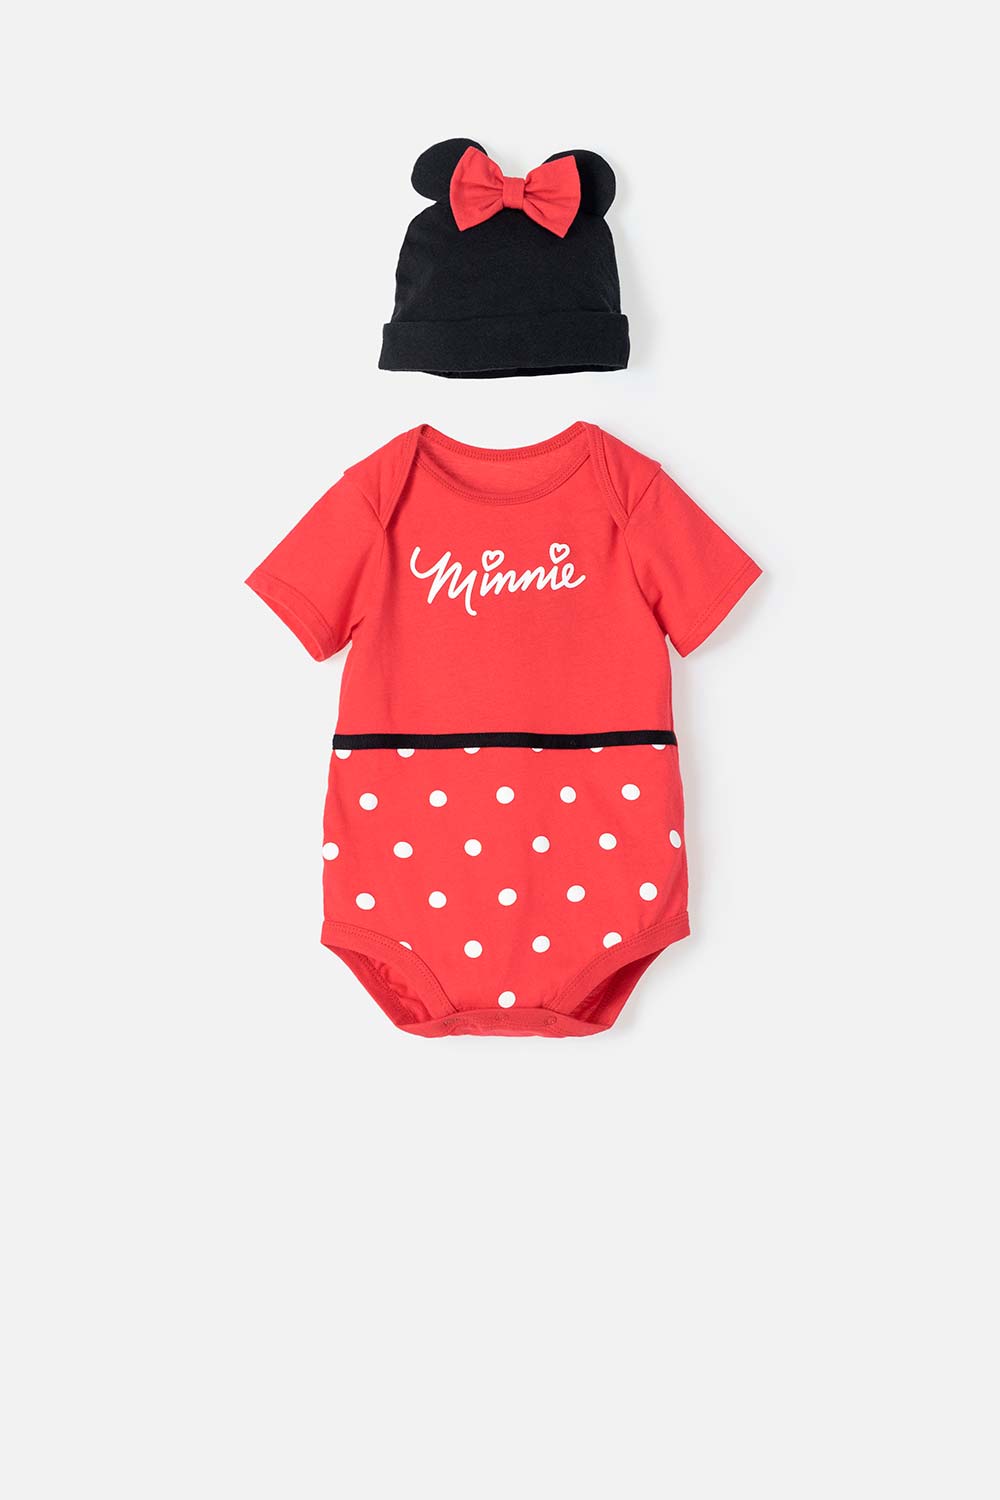 Body de Minnie negro y rojo de manga corta para bebé niña